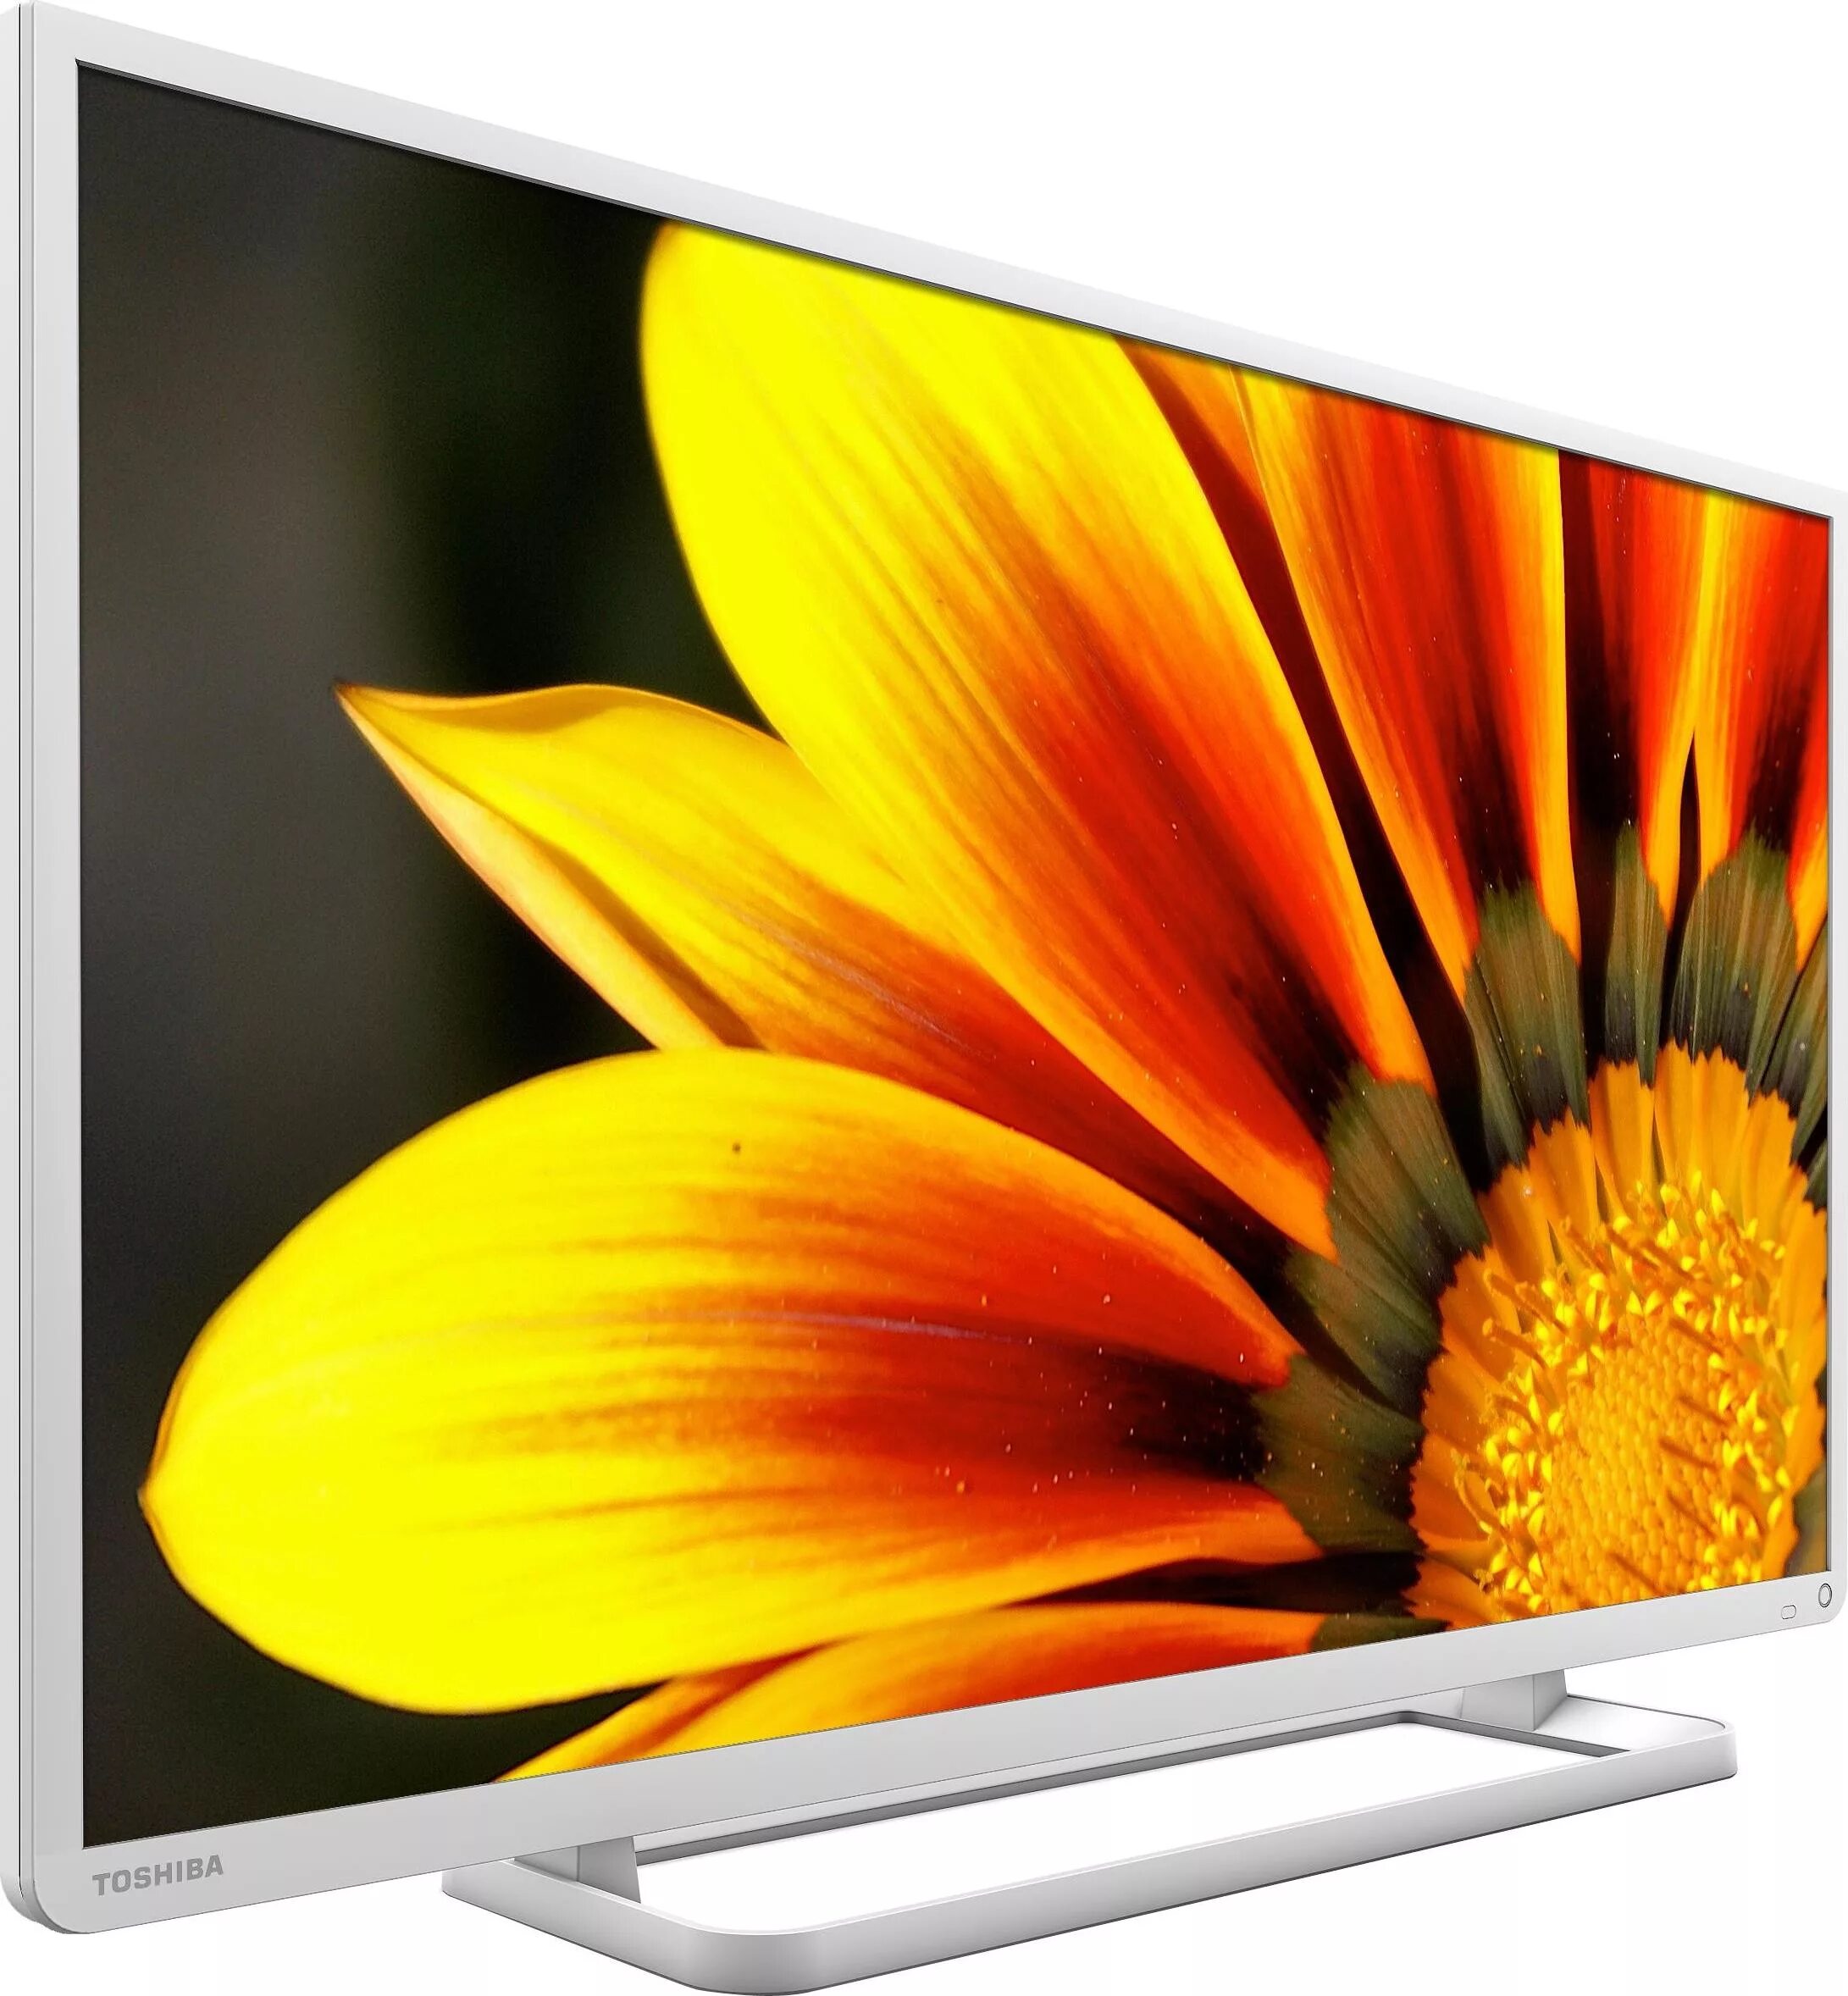 Телевизоры 32 дюйма купить в спб недорого. Телевизор Toshiba 40l2454rk. Toshiba 32w3453r. Toshiba 32l2454rb. Toshiba ЖК ТВ 40l7356rk.